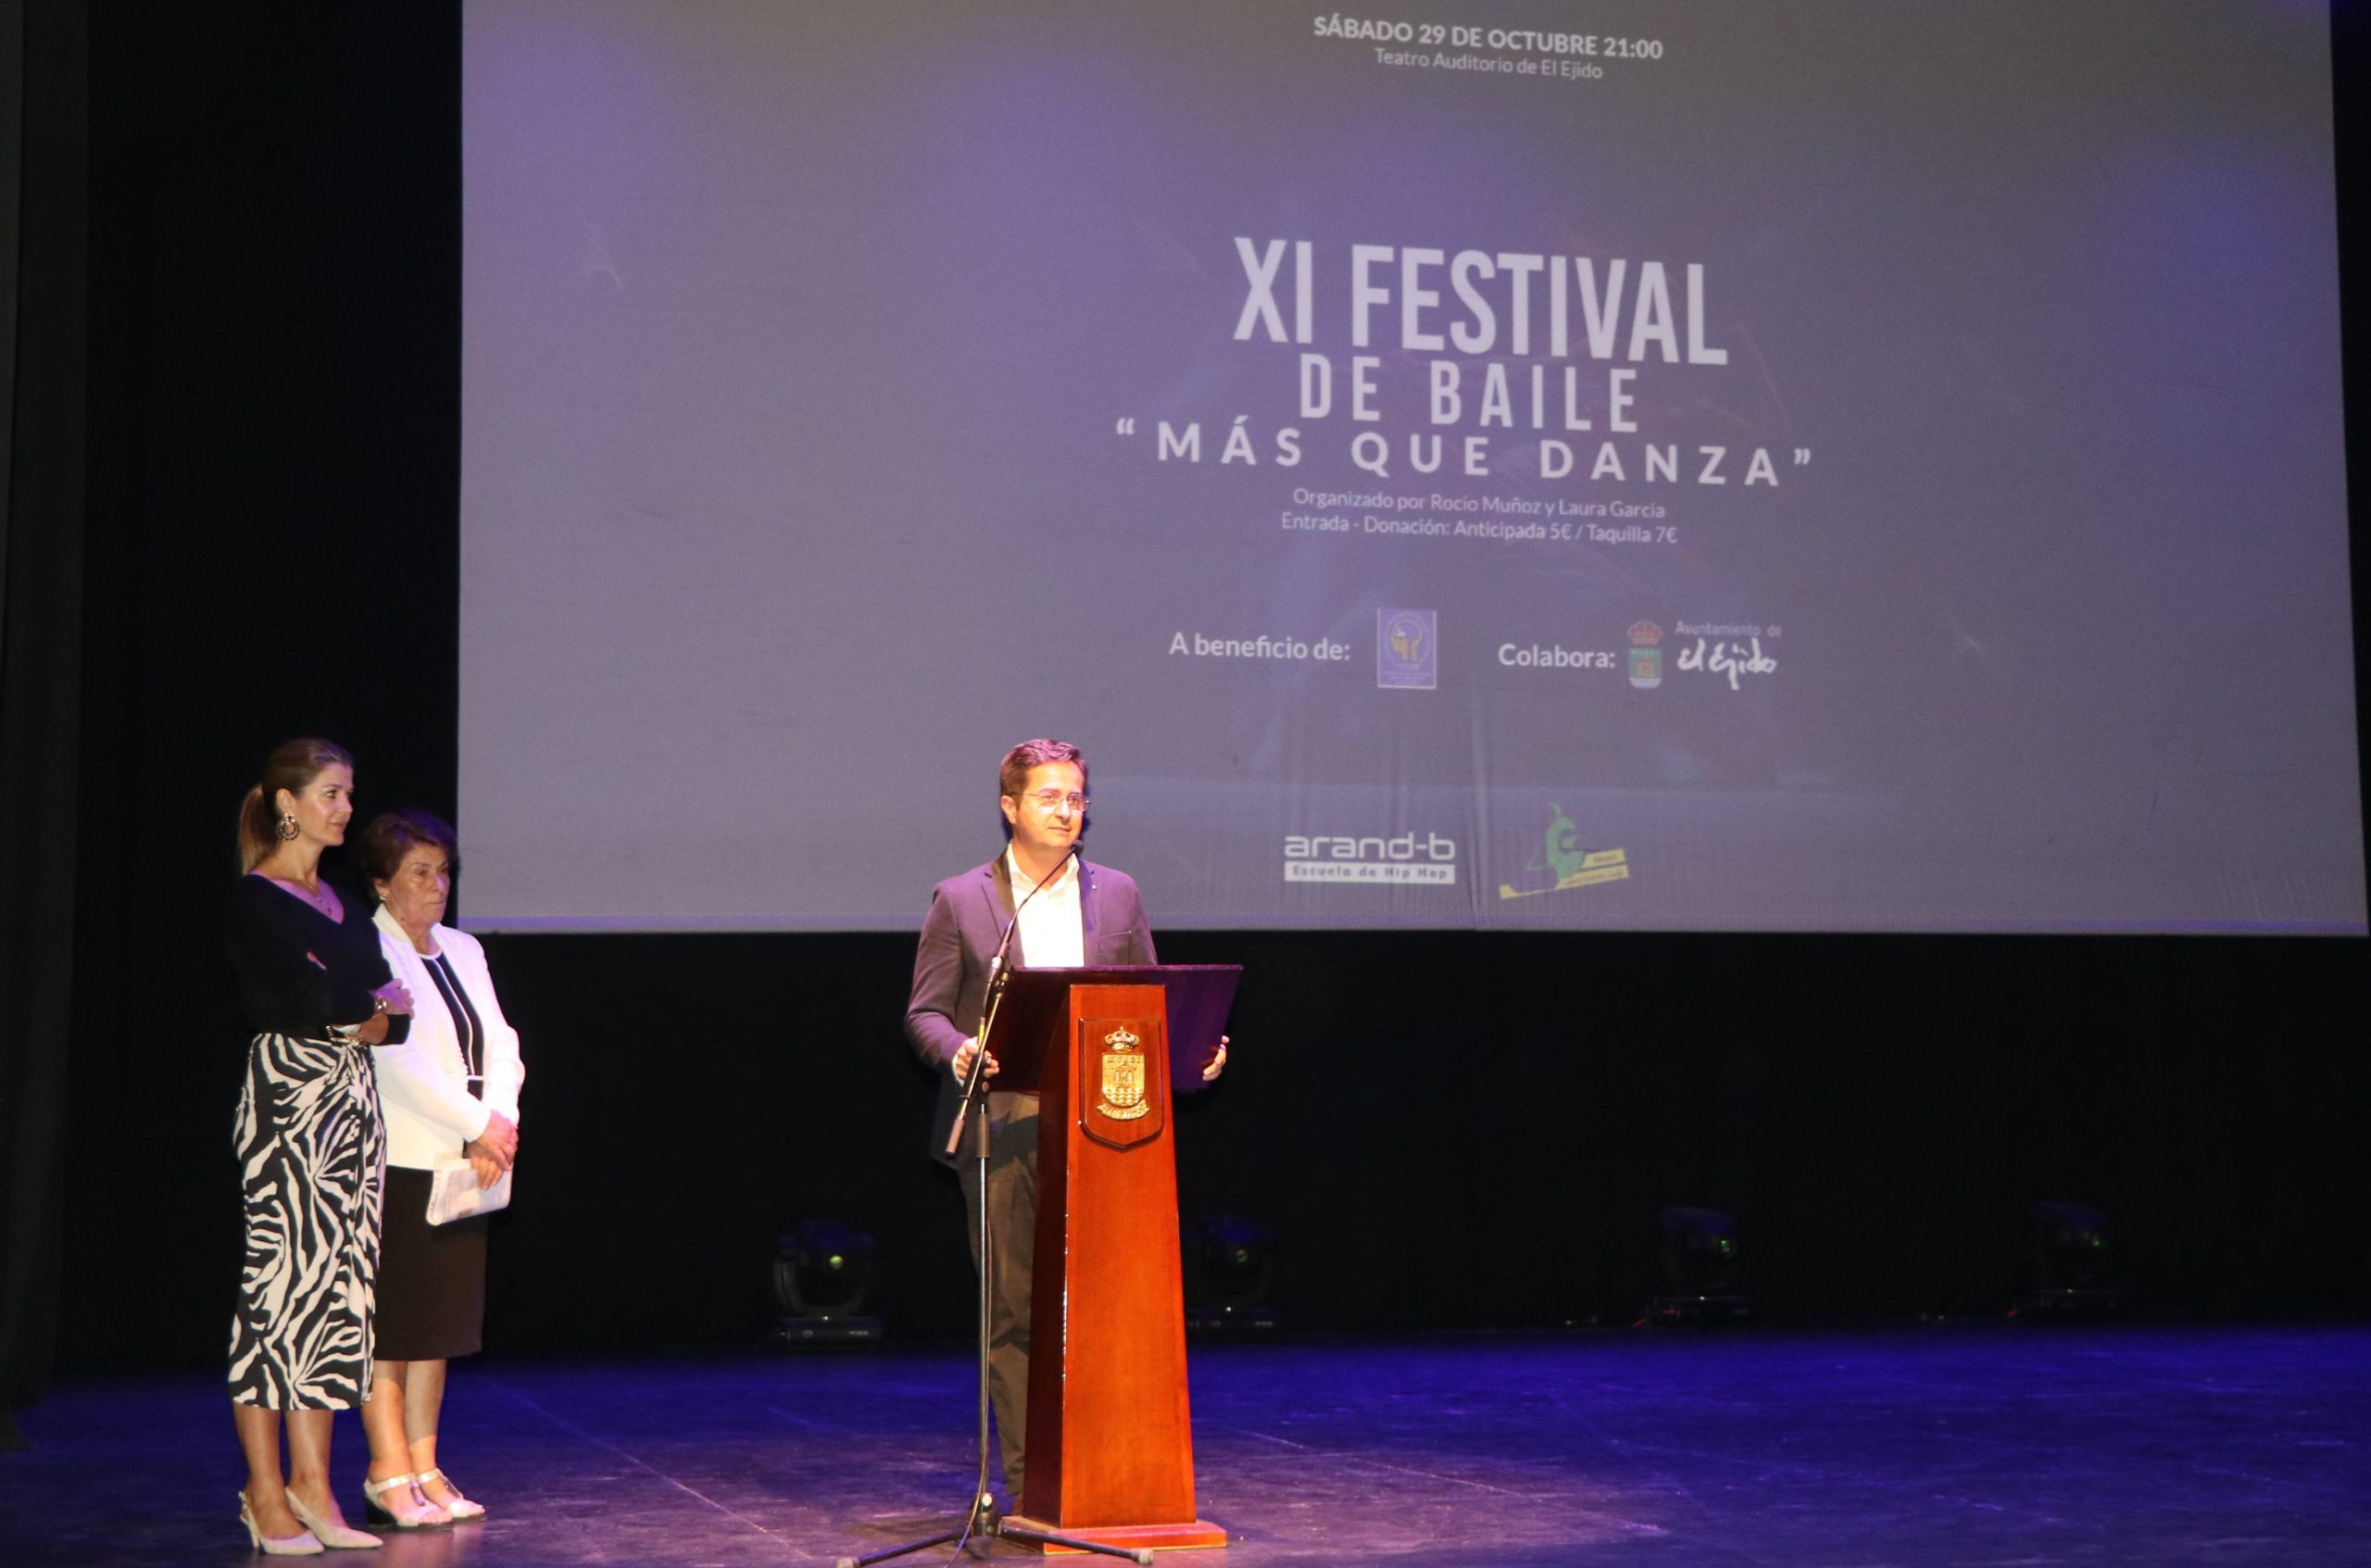 Solidaridad y baile se fusionan en el XI Festival ‘Más que Danza’ a favor de la Asociación Vivir